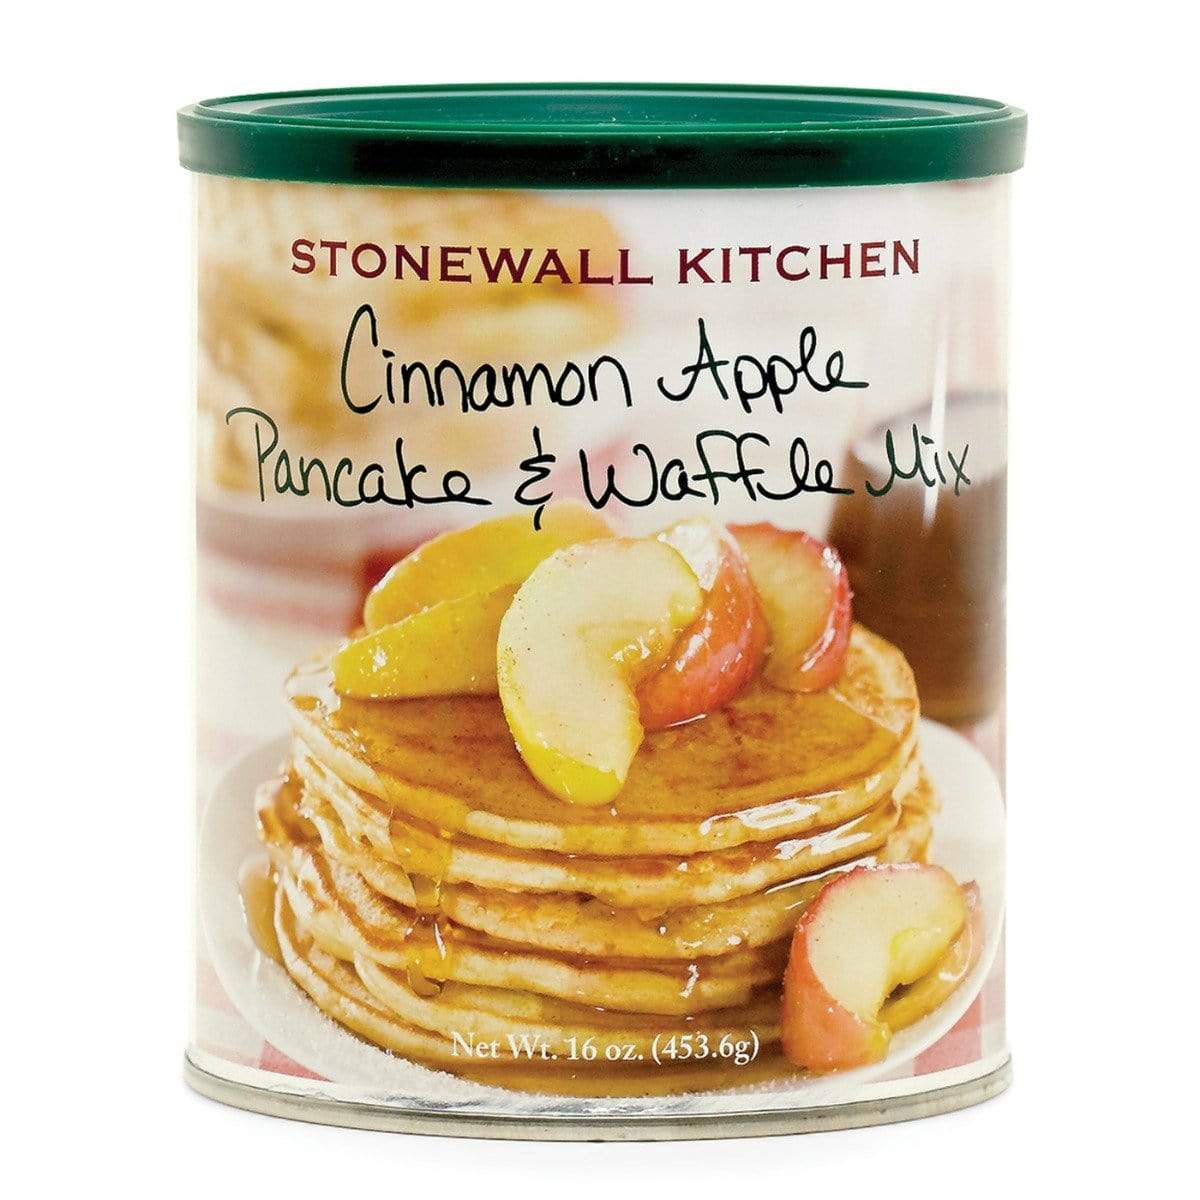 Stonewell Kitchen Pancake Mix Stonewall Kitchen Cinnamon Apple Pancake and Waffle Mix